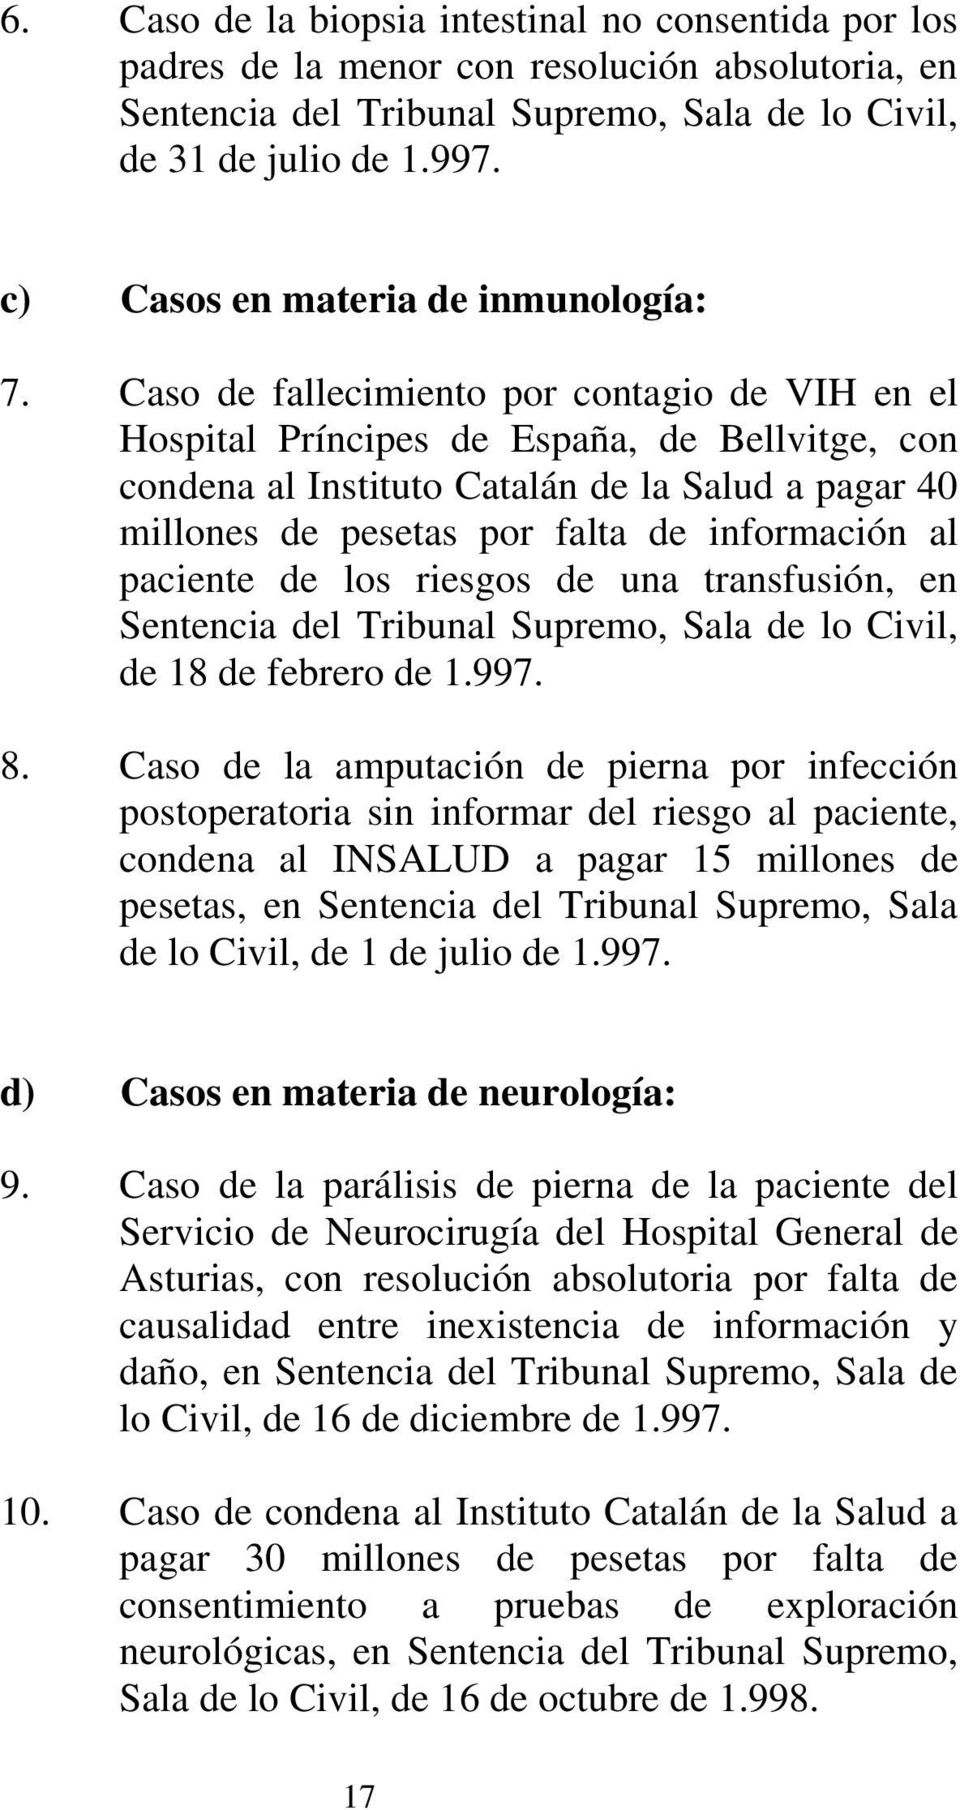 Caso de fallecimiento por contagio de VIH en el Hospital Príncipes de España, de Bellvitge, con condena al Instituto Catalán de la Salud a pagar 40 millones de pesetas por falta de información al